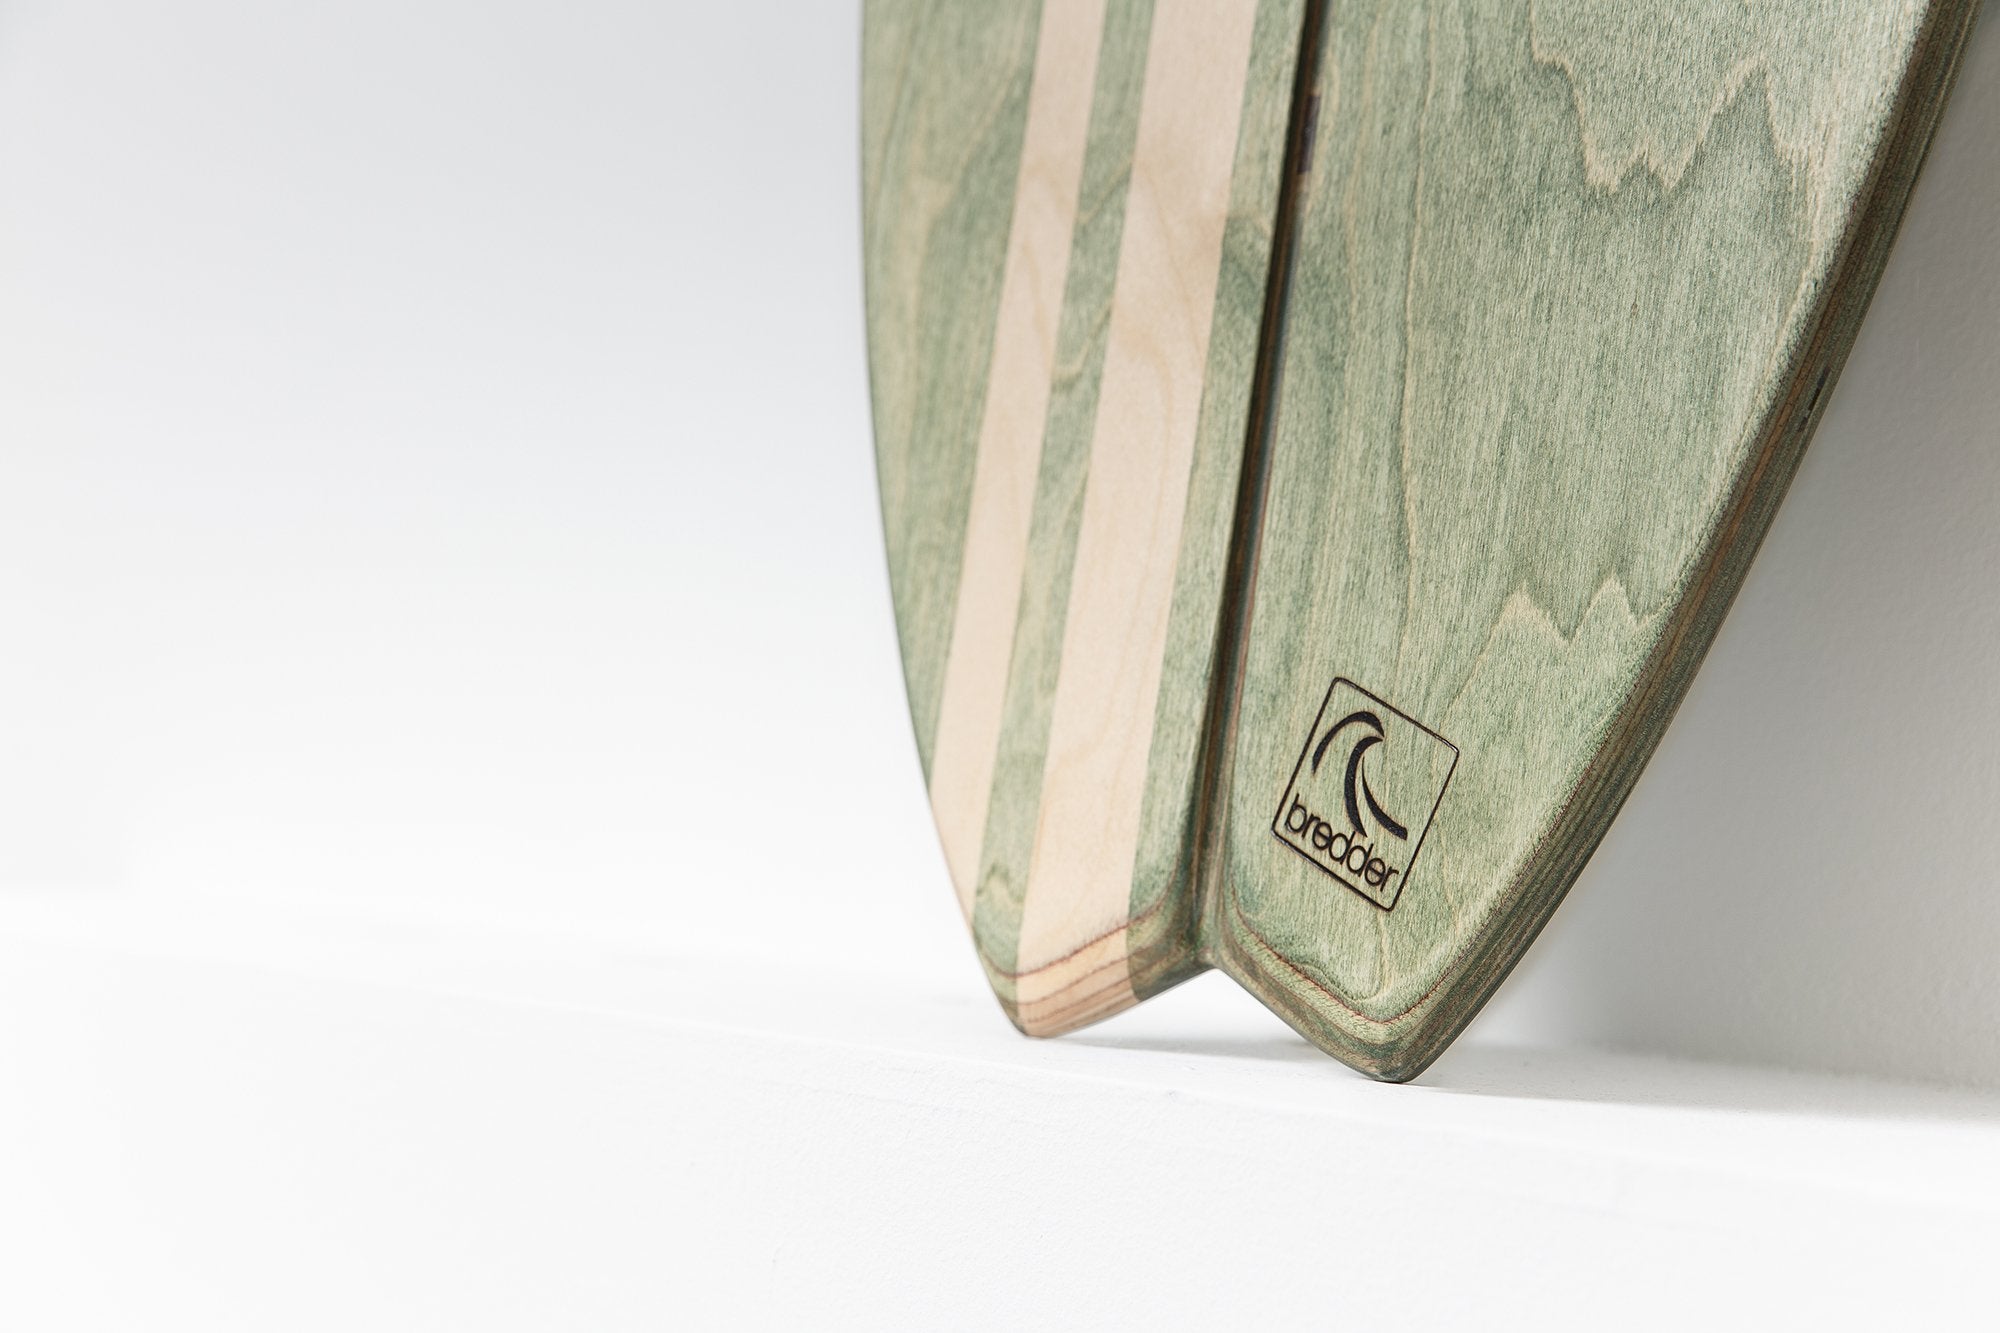 Balance Board Mundaka Fisch Surfboard Detail